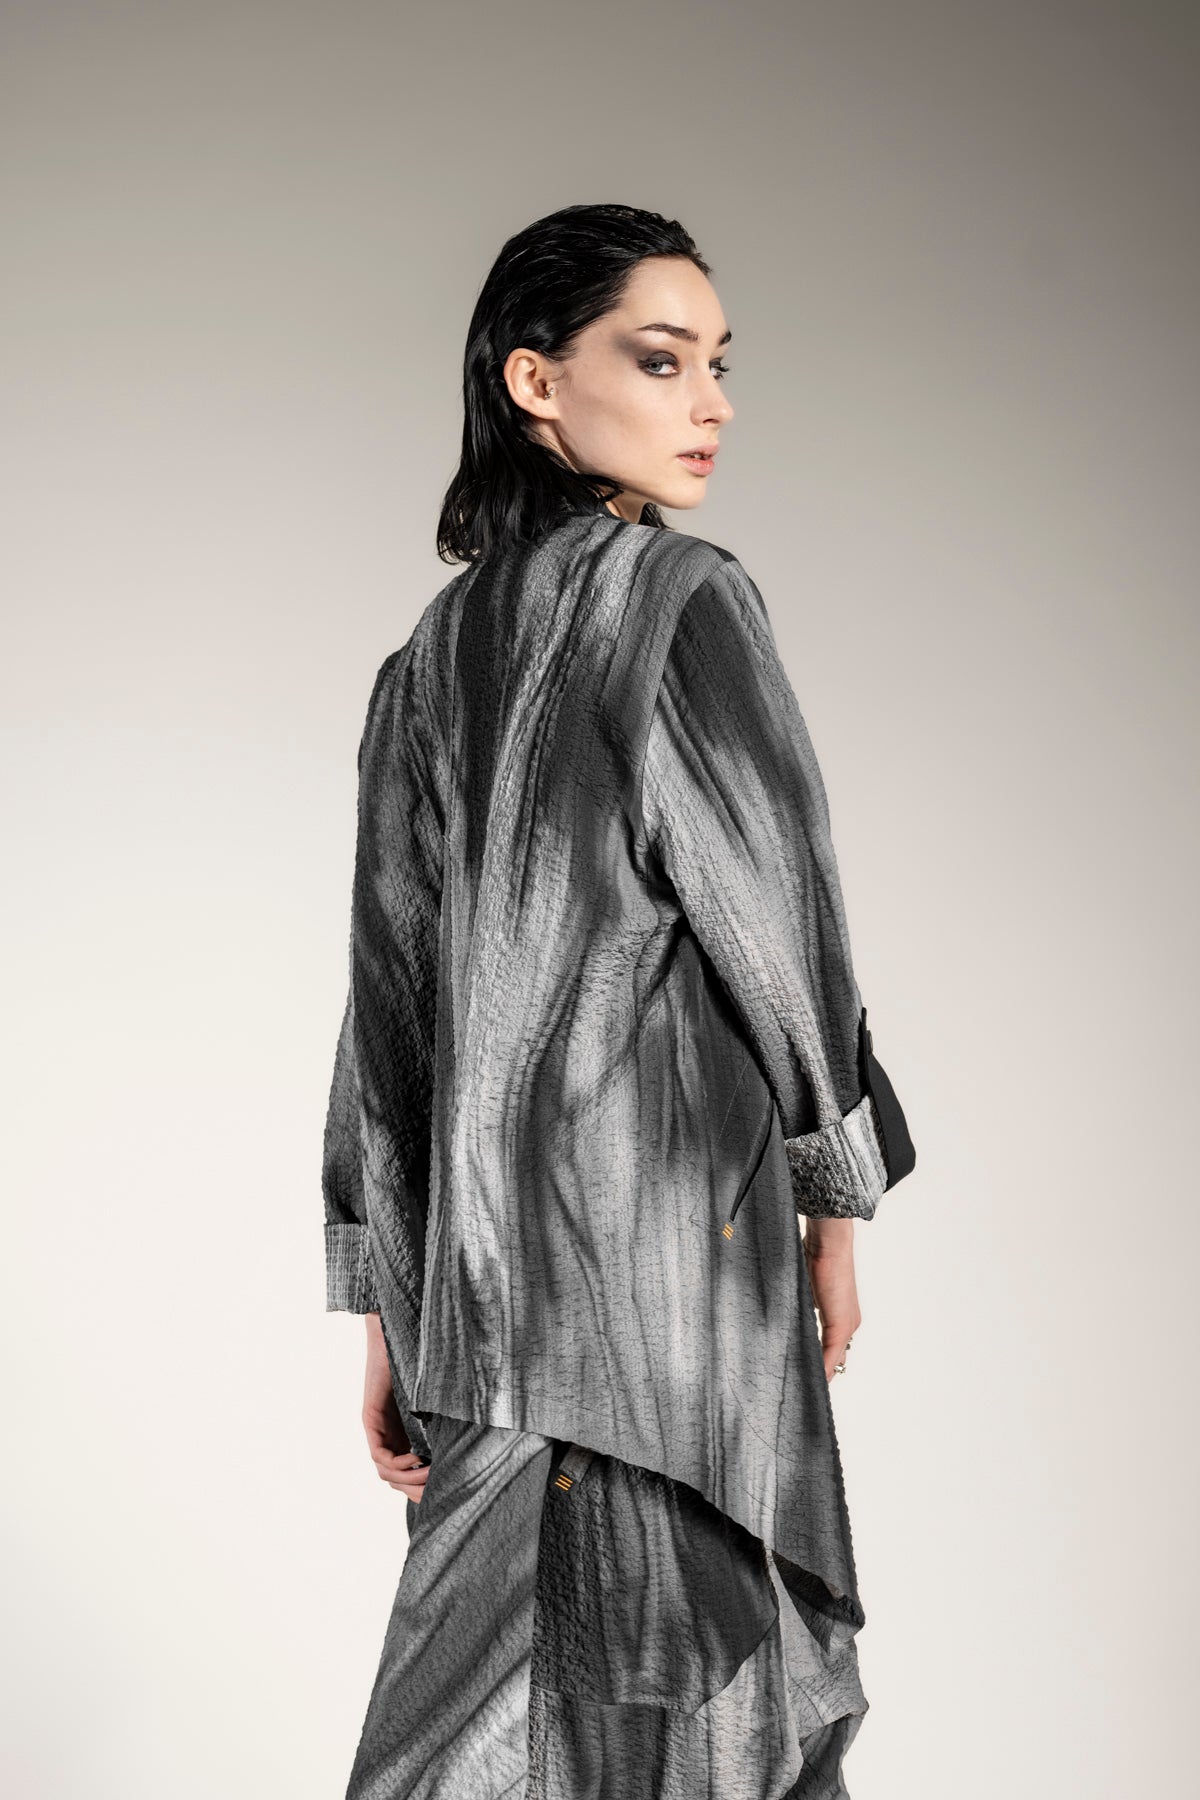 eigensinnig wien | Apollon | Außergewöhnliche Oversize Jacke aus grau-mellierter Baumwolle